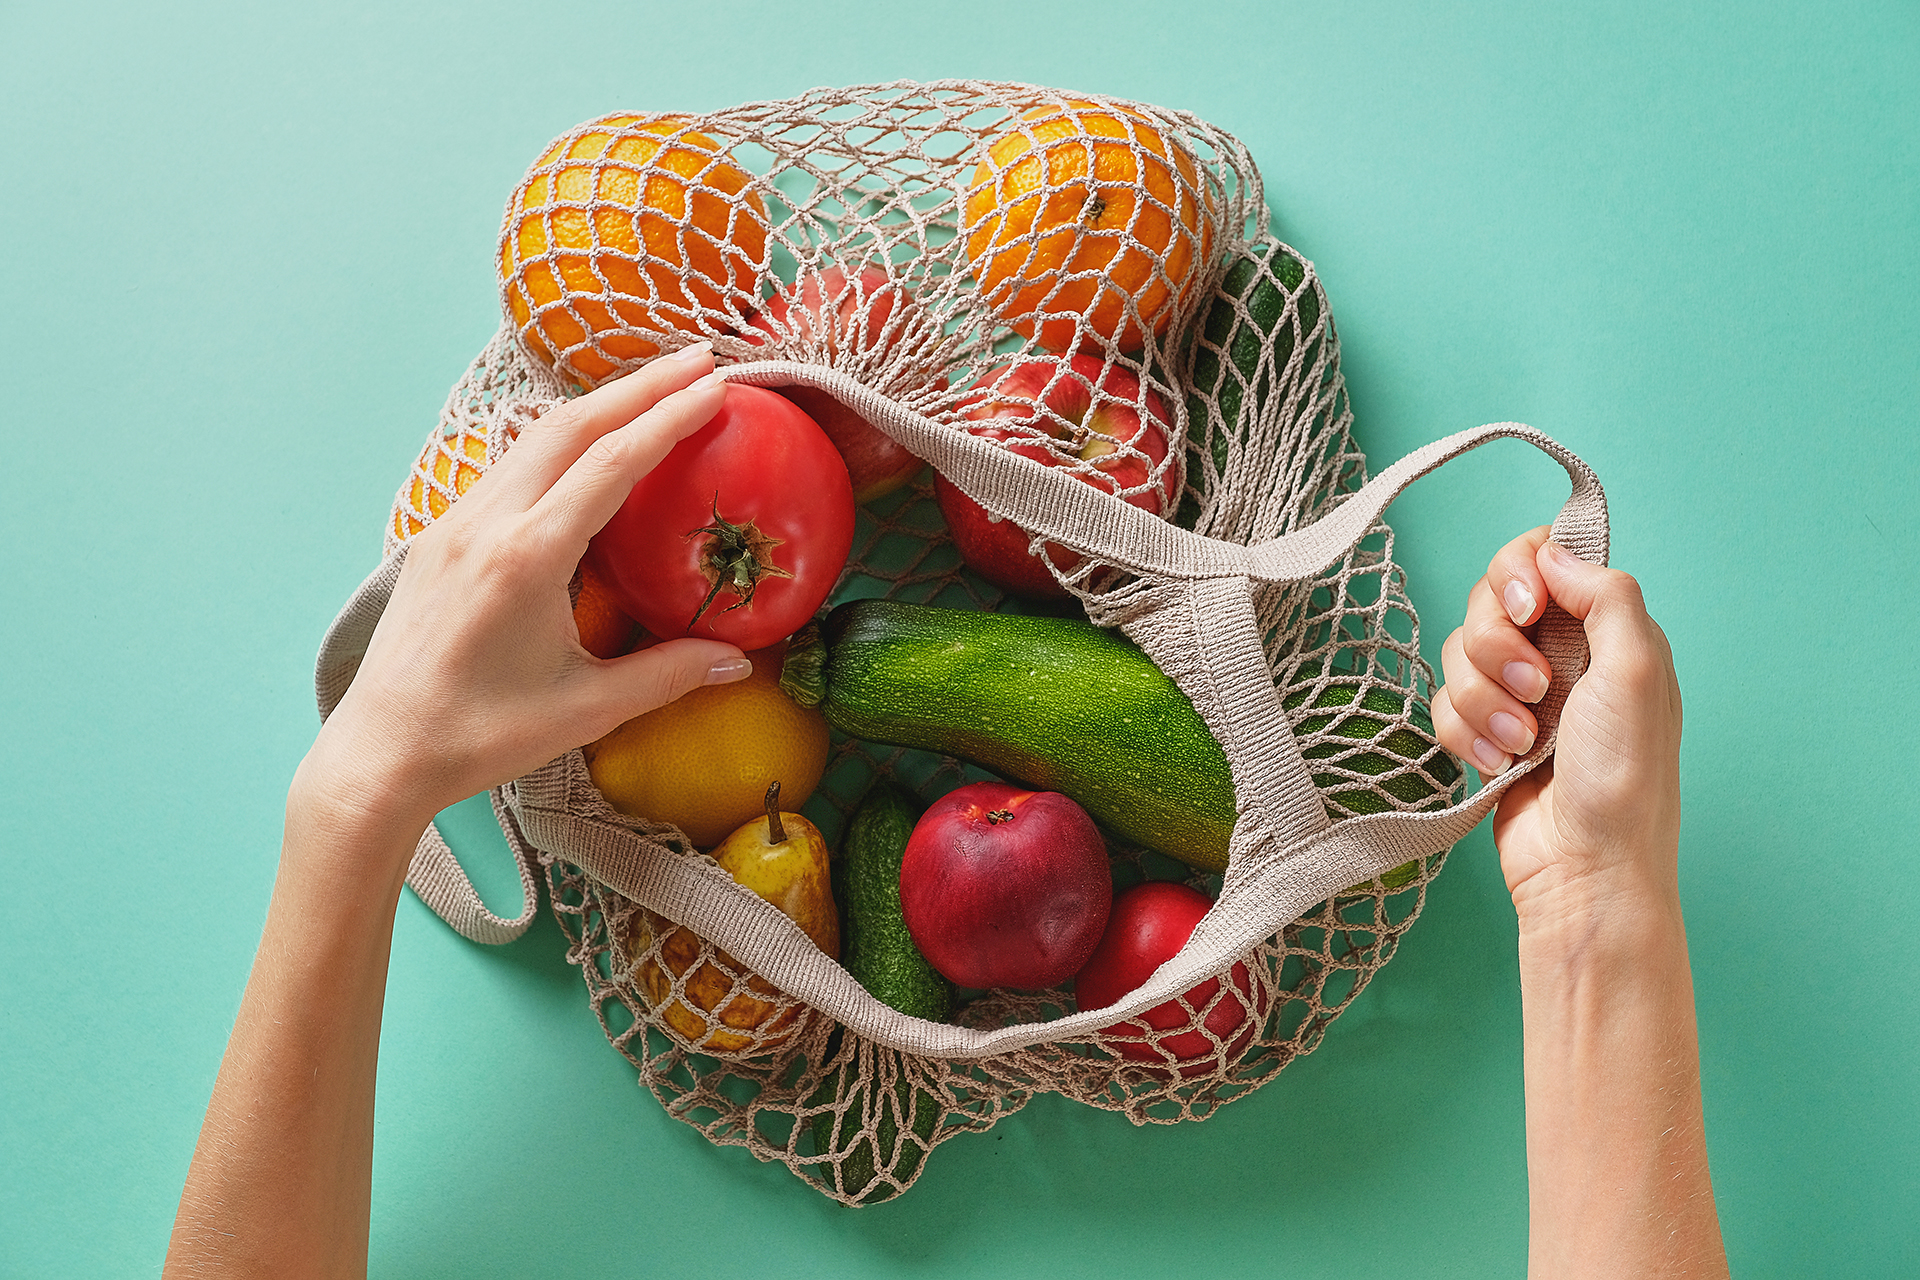 Las verduras aportan fibra y compensan los picos de glucemia que pueden producir el resto de los alimentos / (Getty Images)